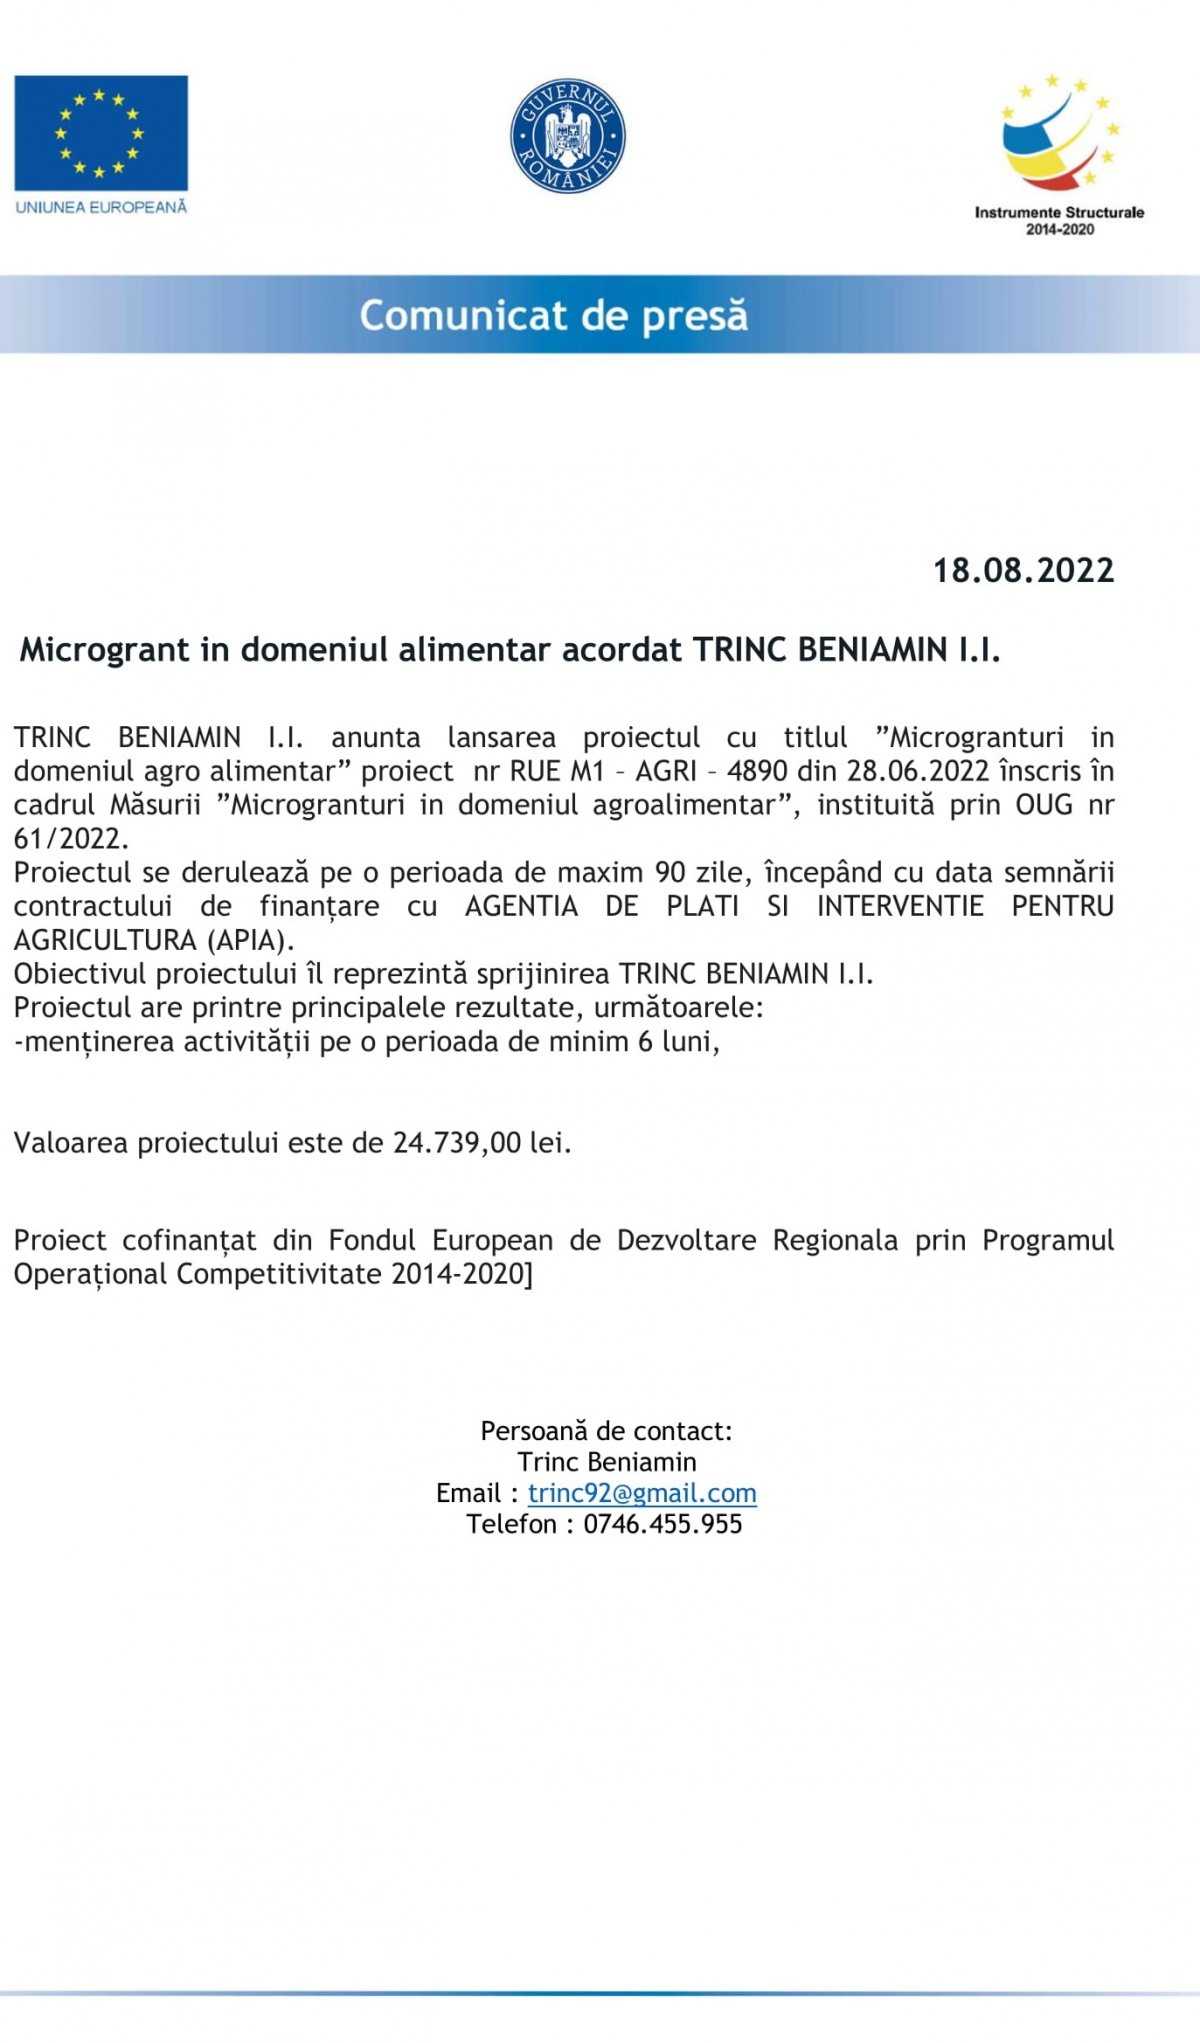 Microgrant in domeniul alimentar acordat TRINC BENIAMIN I.I.